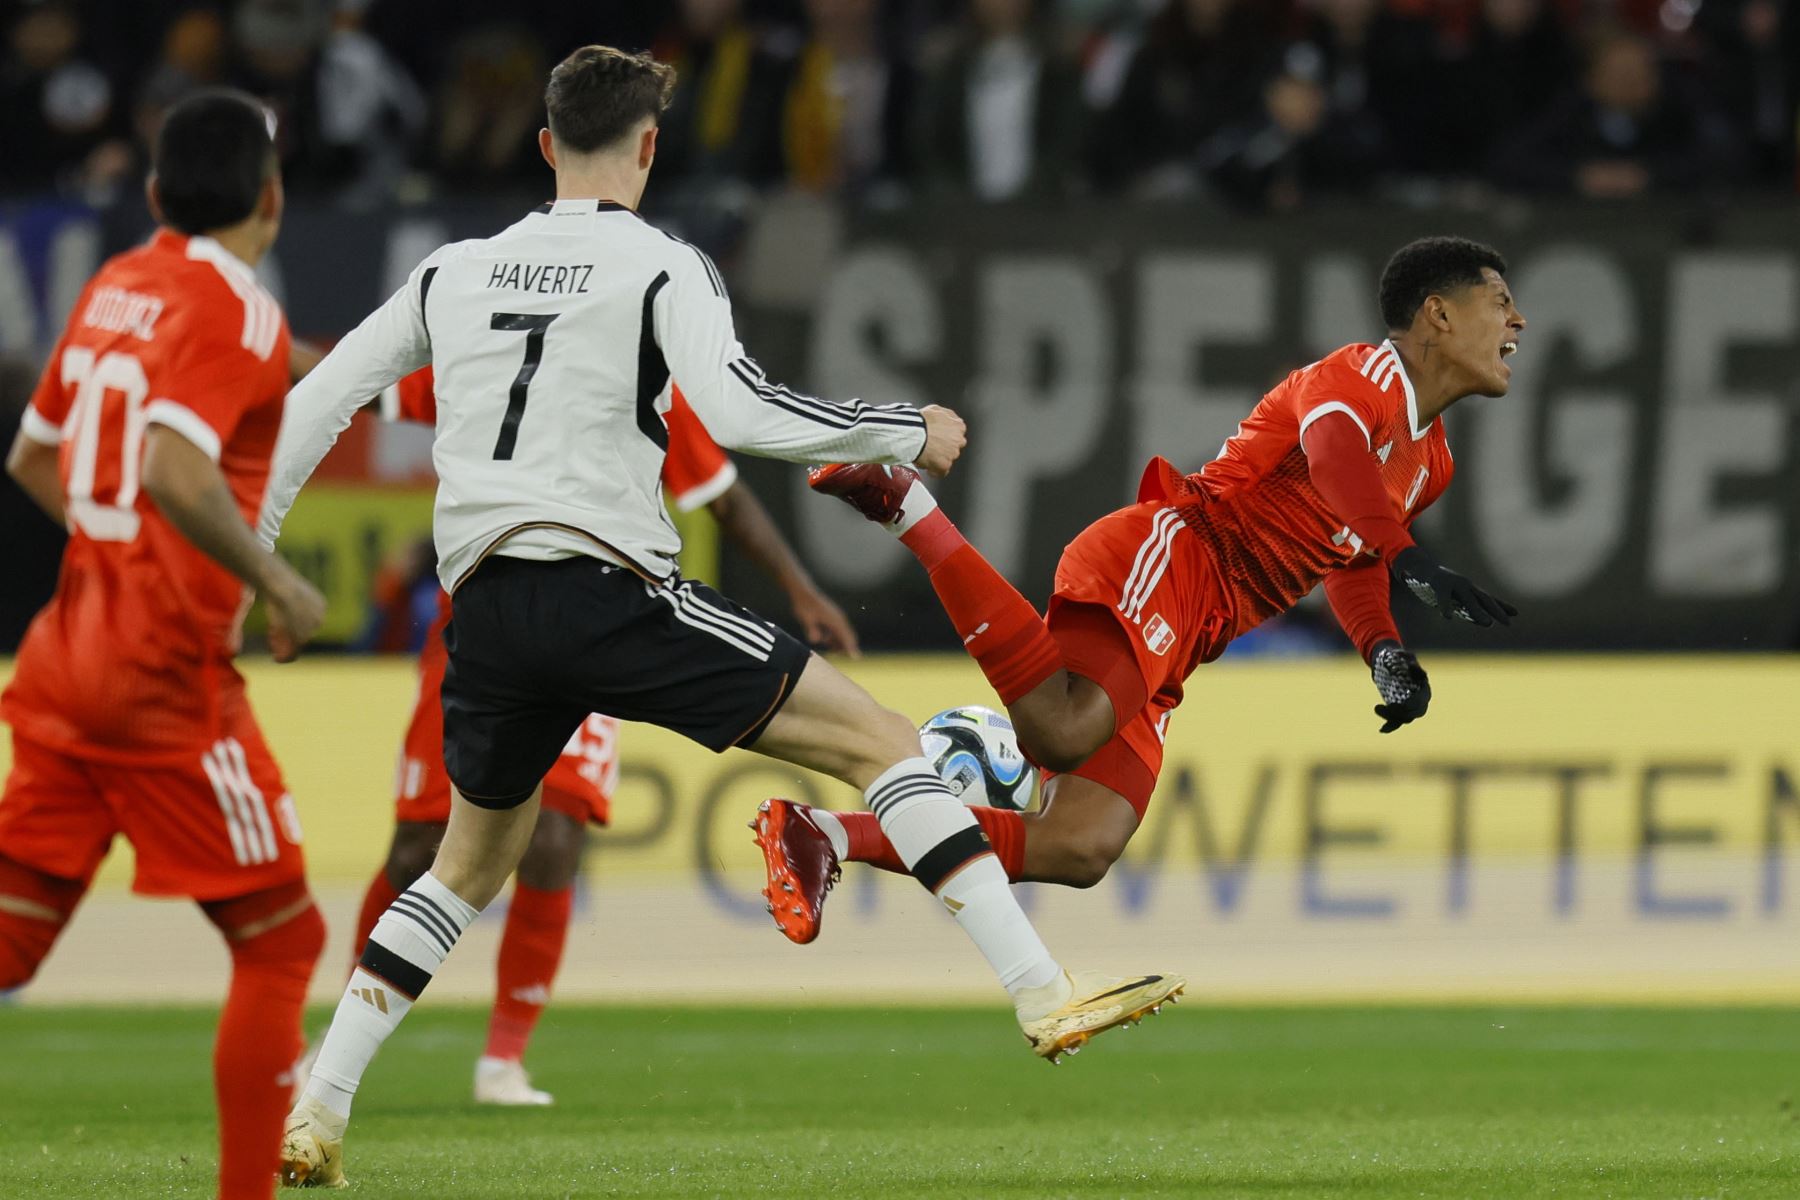 El alemán Kai Havertz en acción contra el peruano Wilder Cartagena durante el partido amistoso de fútbol internacional entre Alemania y Perú en Mainz, Alemania.
Foto: EFE